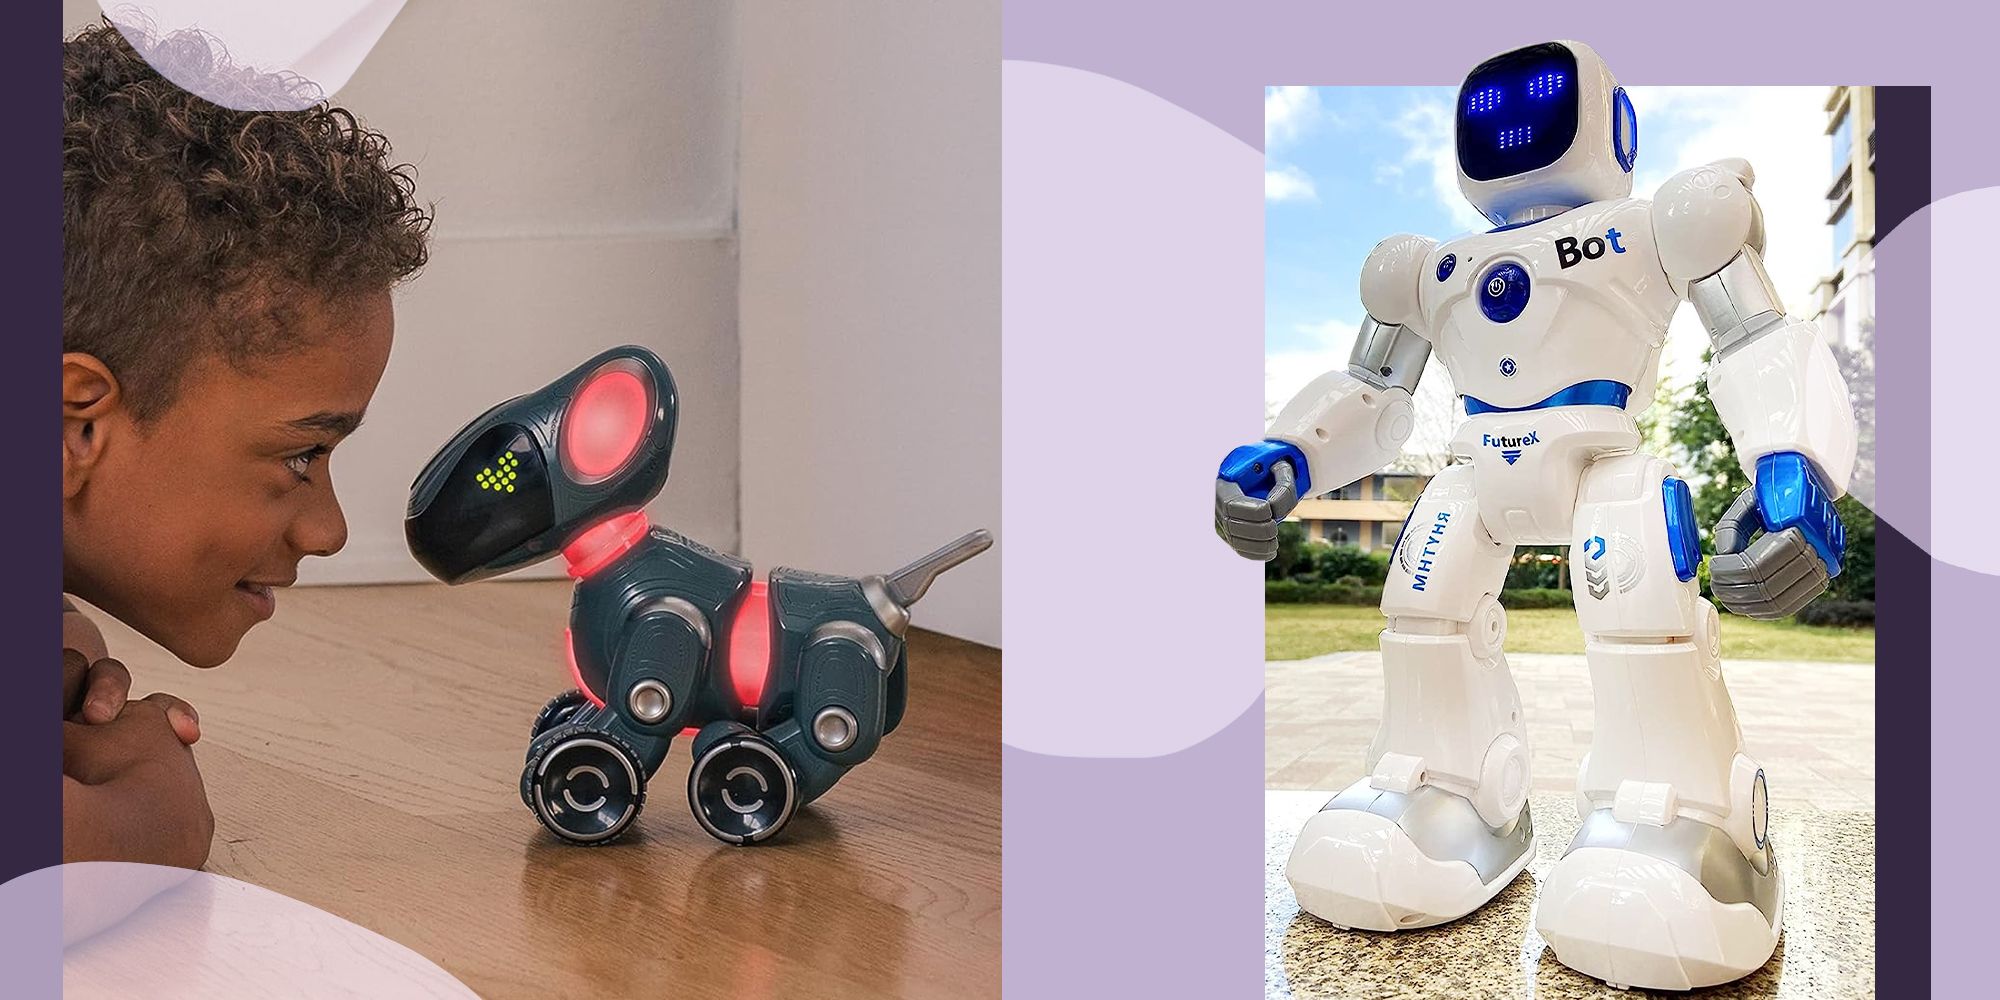 https://hips.hearstapps.com/hmg-prod/images/coding-robot-toys-656df55e1eb4d.jpg